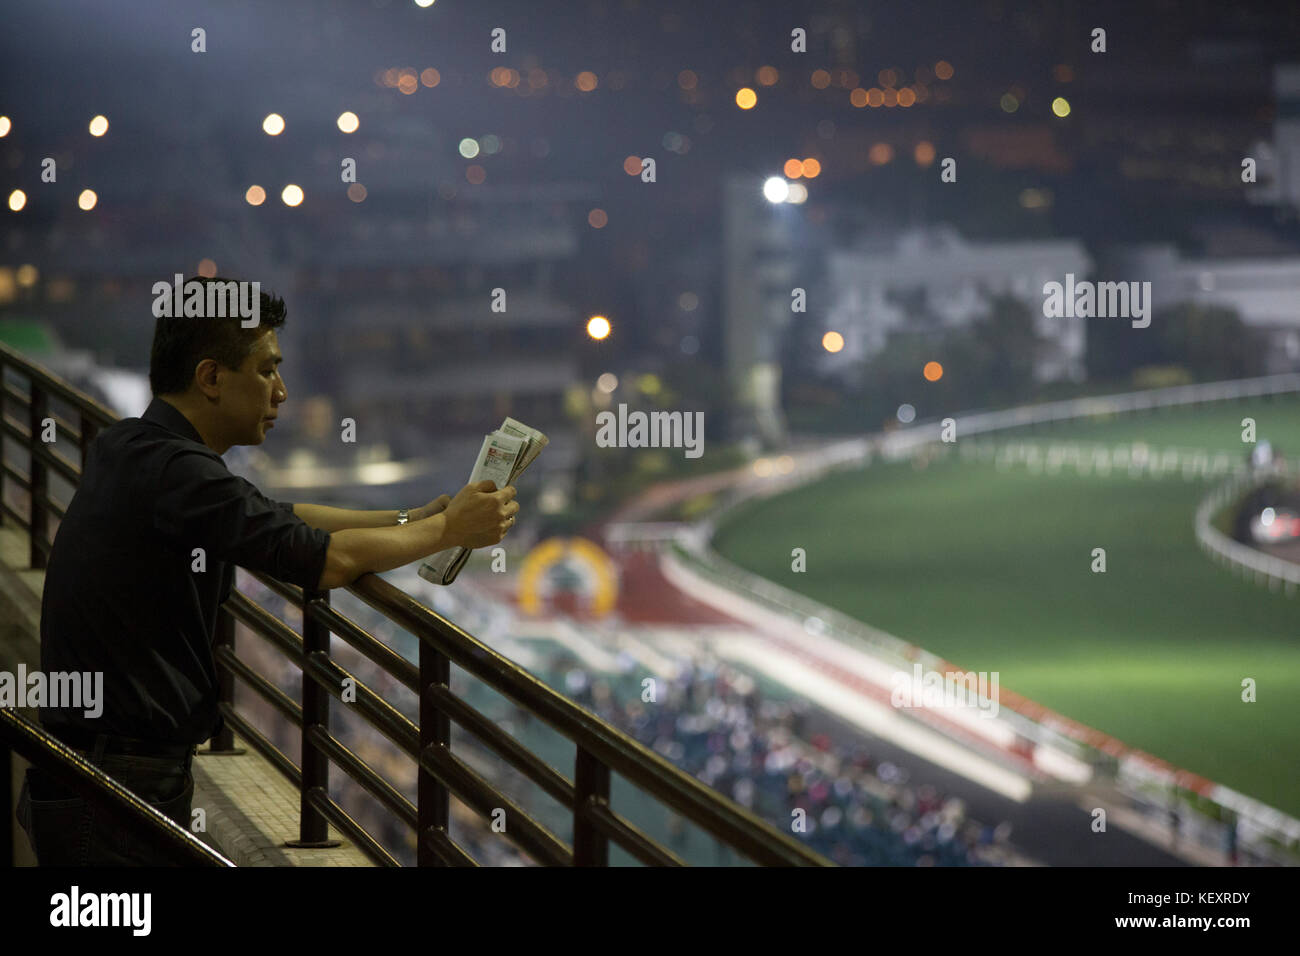 Photographie de l'homme lisant des Paris sur le circuit de course de chevaux, Hong Kong, Chine Banque D'Images